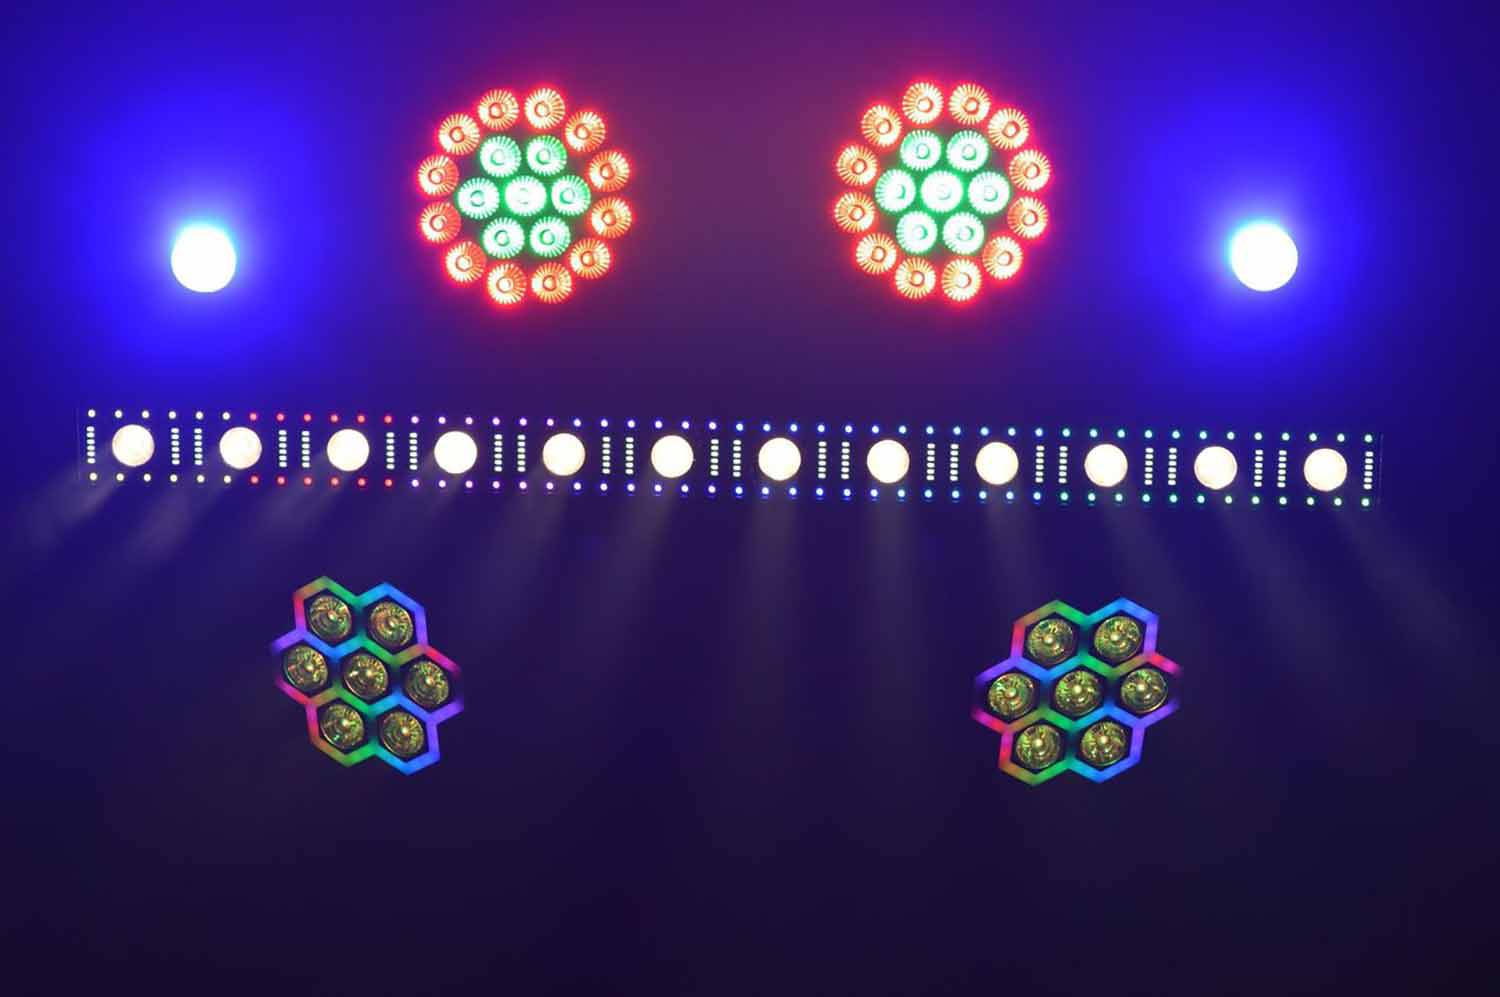 JMAZ Versa Flex Par QUAD19 LED Par featuring 19 QUAD (RGBW) 10W LEDS - Pair - Hollywood DJ